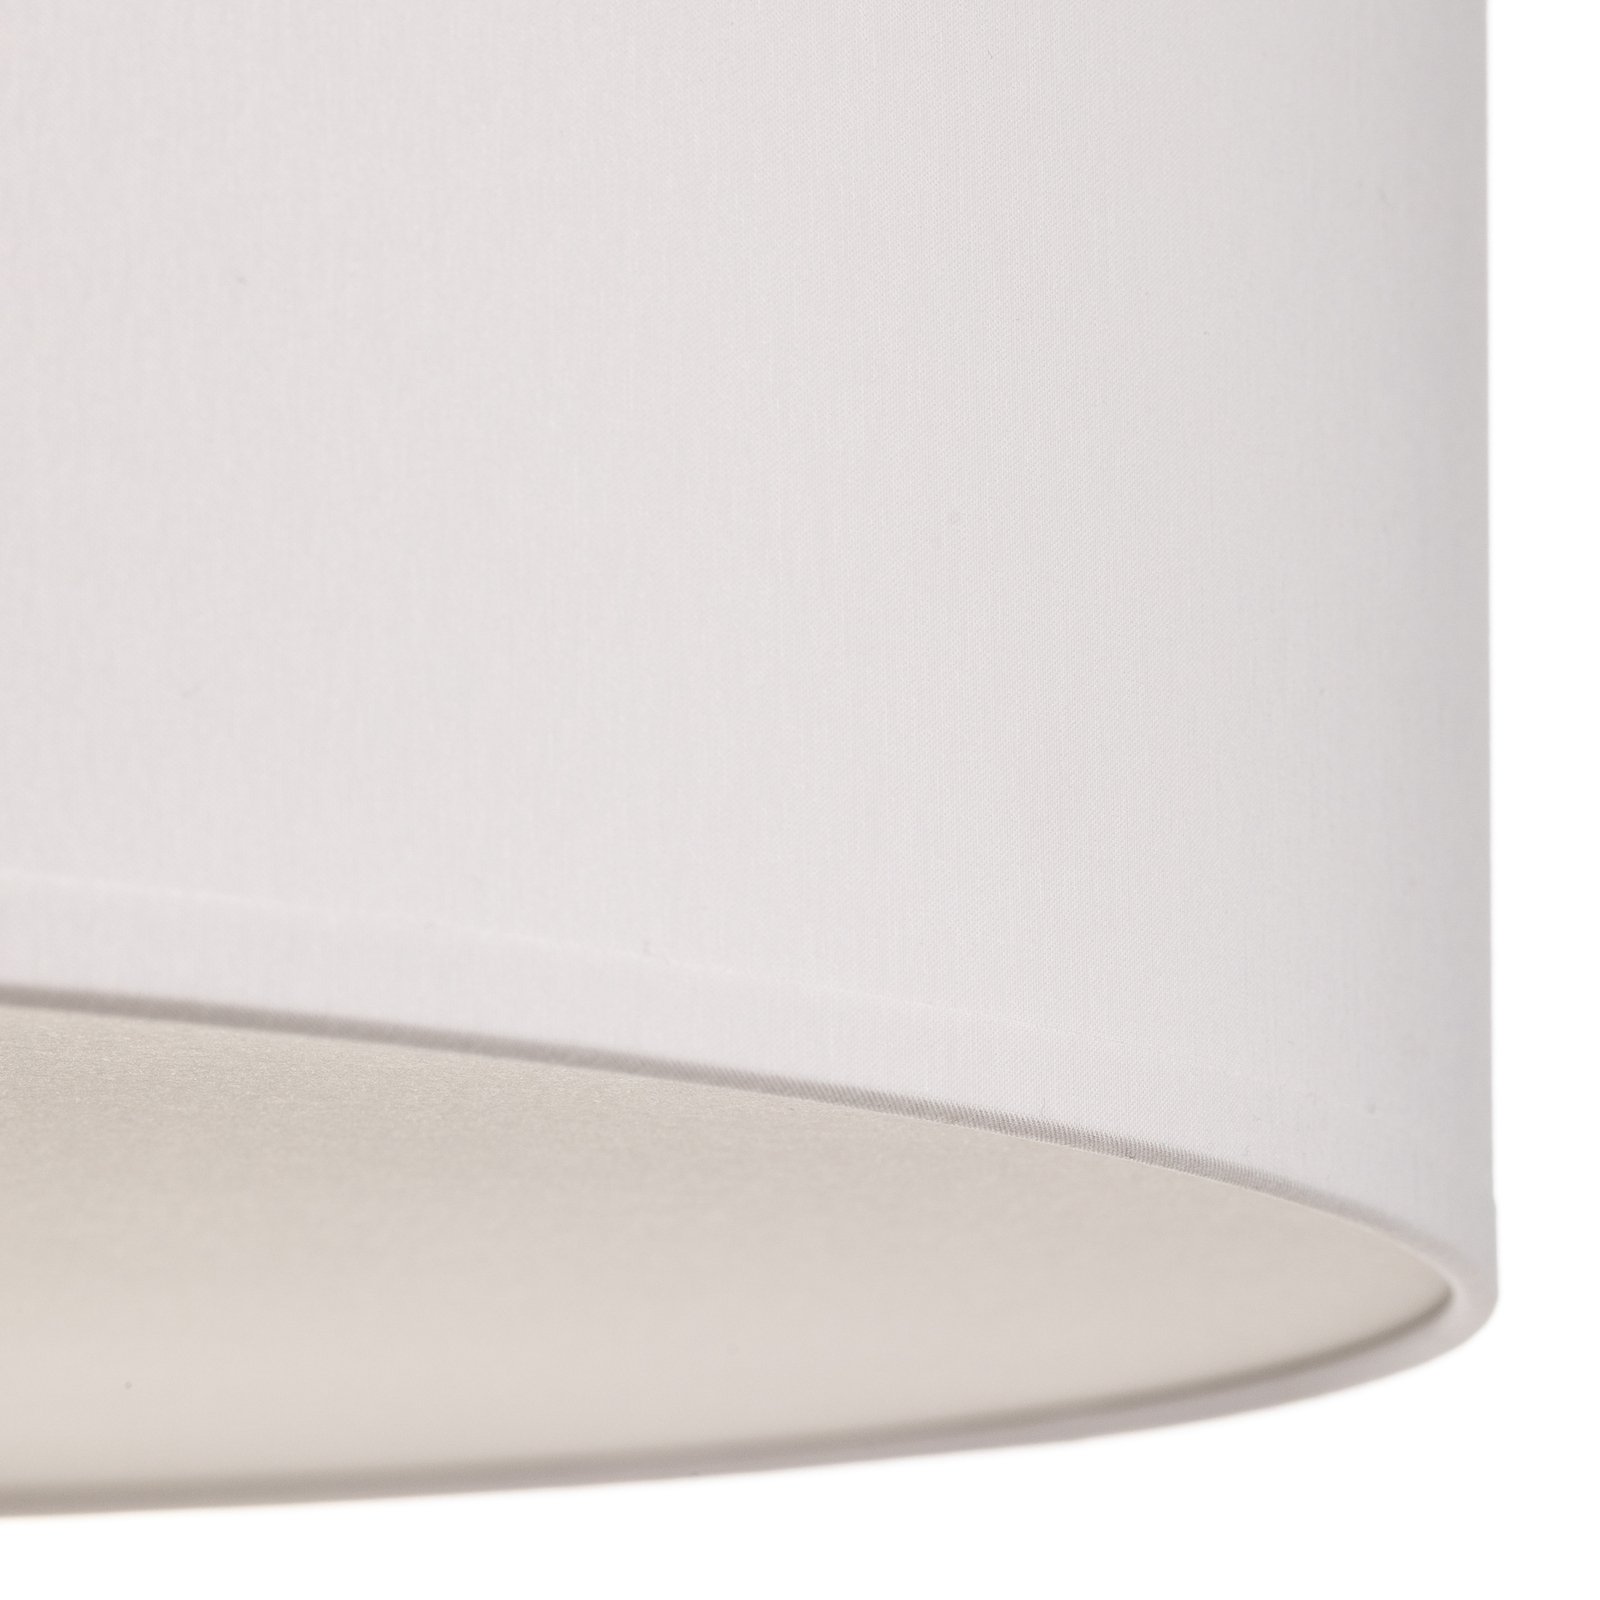 Fiolett taklampe med avstandsstykke, hvit